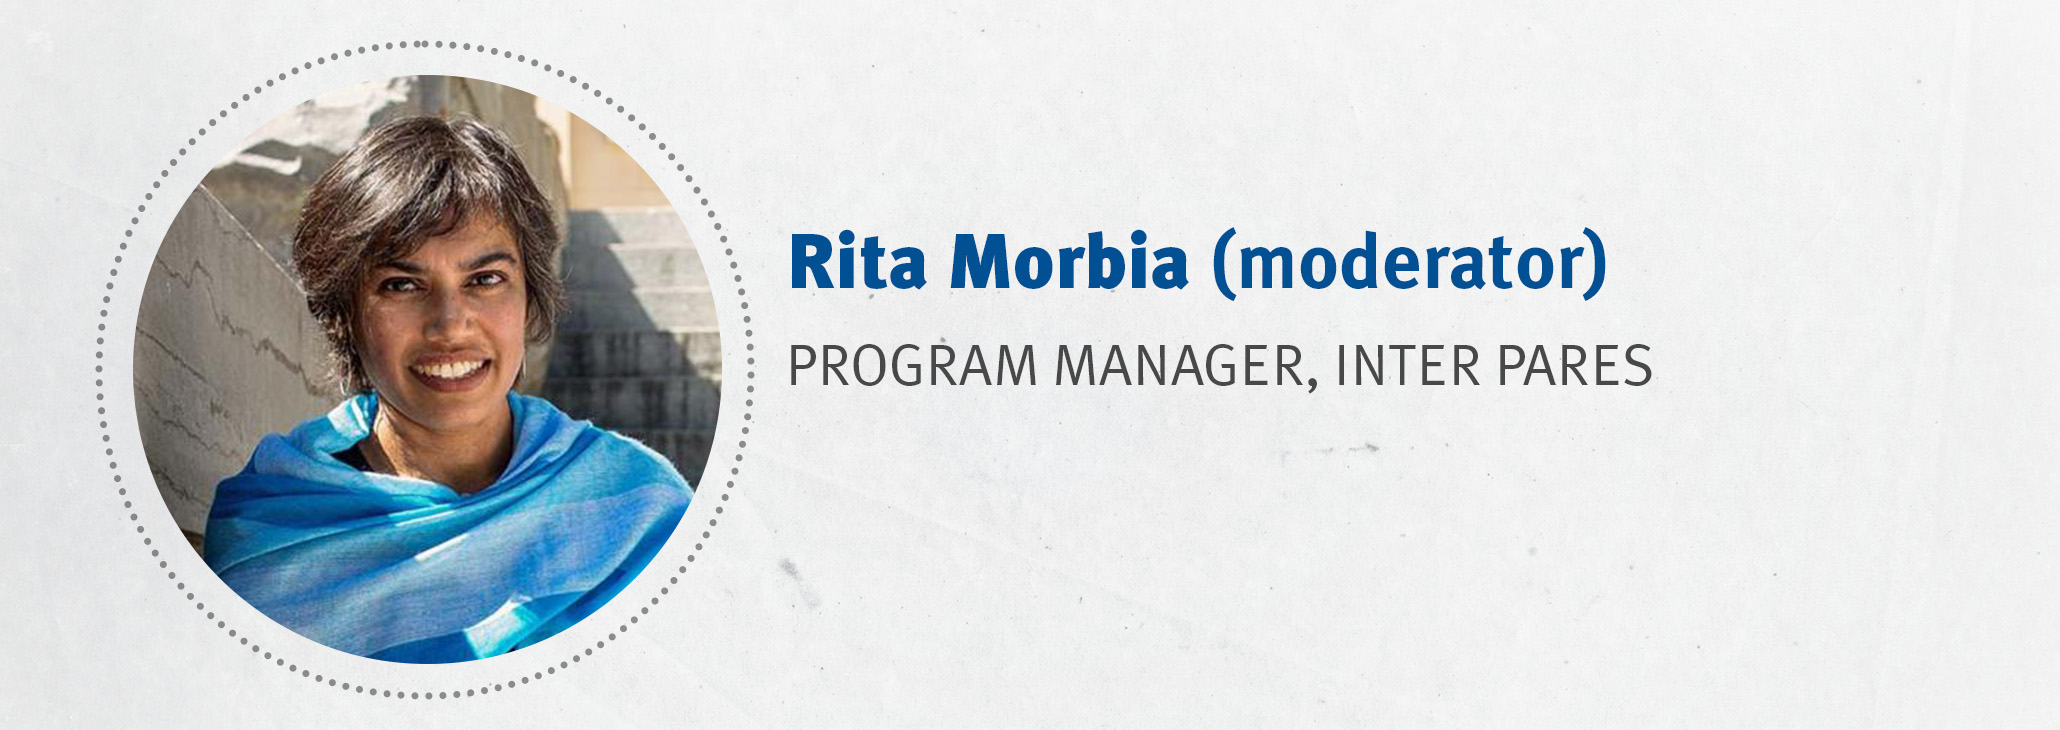 Rita Morbia, program manager Inter Pares